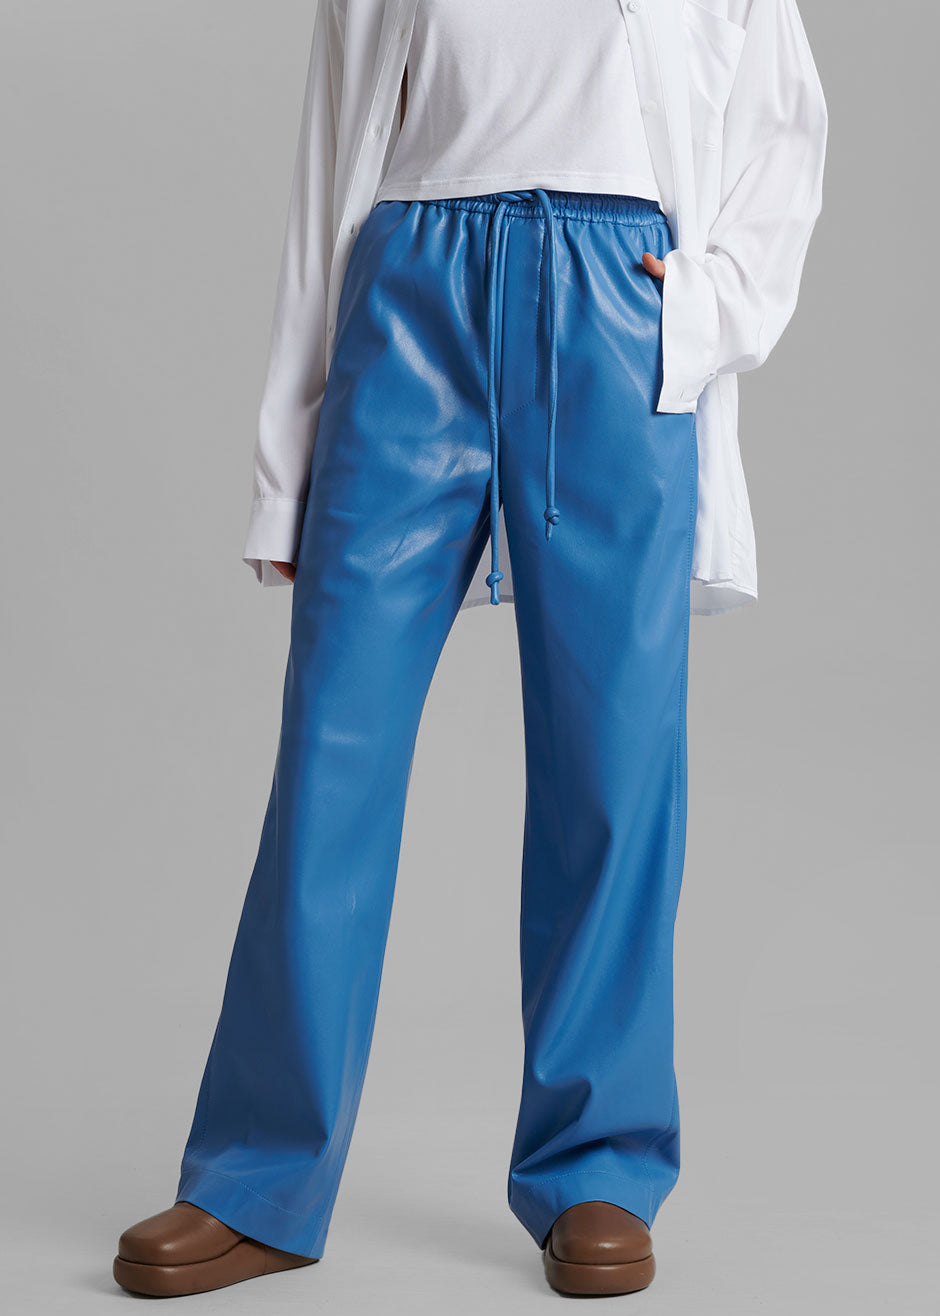 Nanushka Calie Vegan Leather Pants - Blue - 1